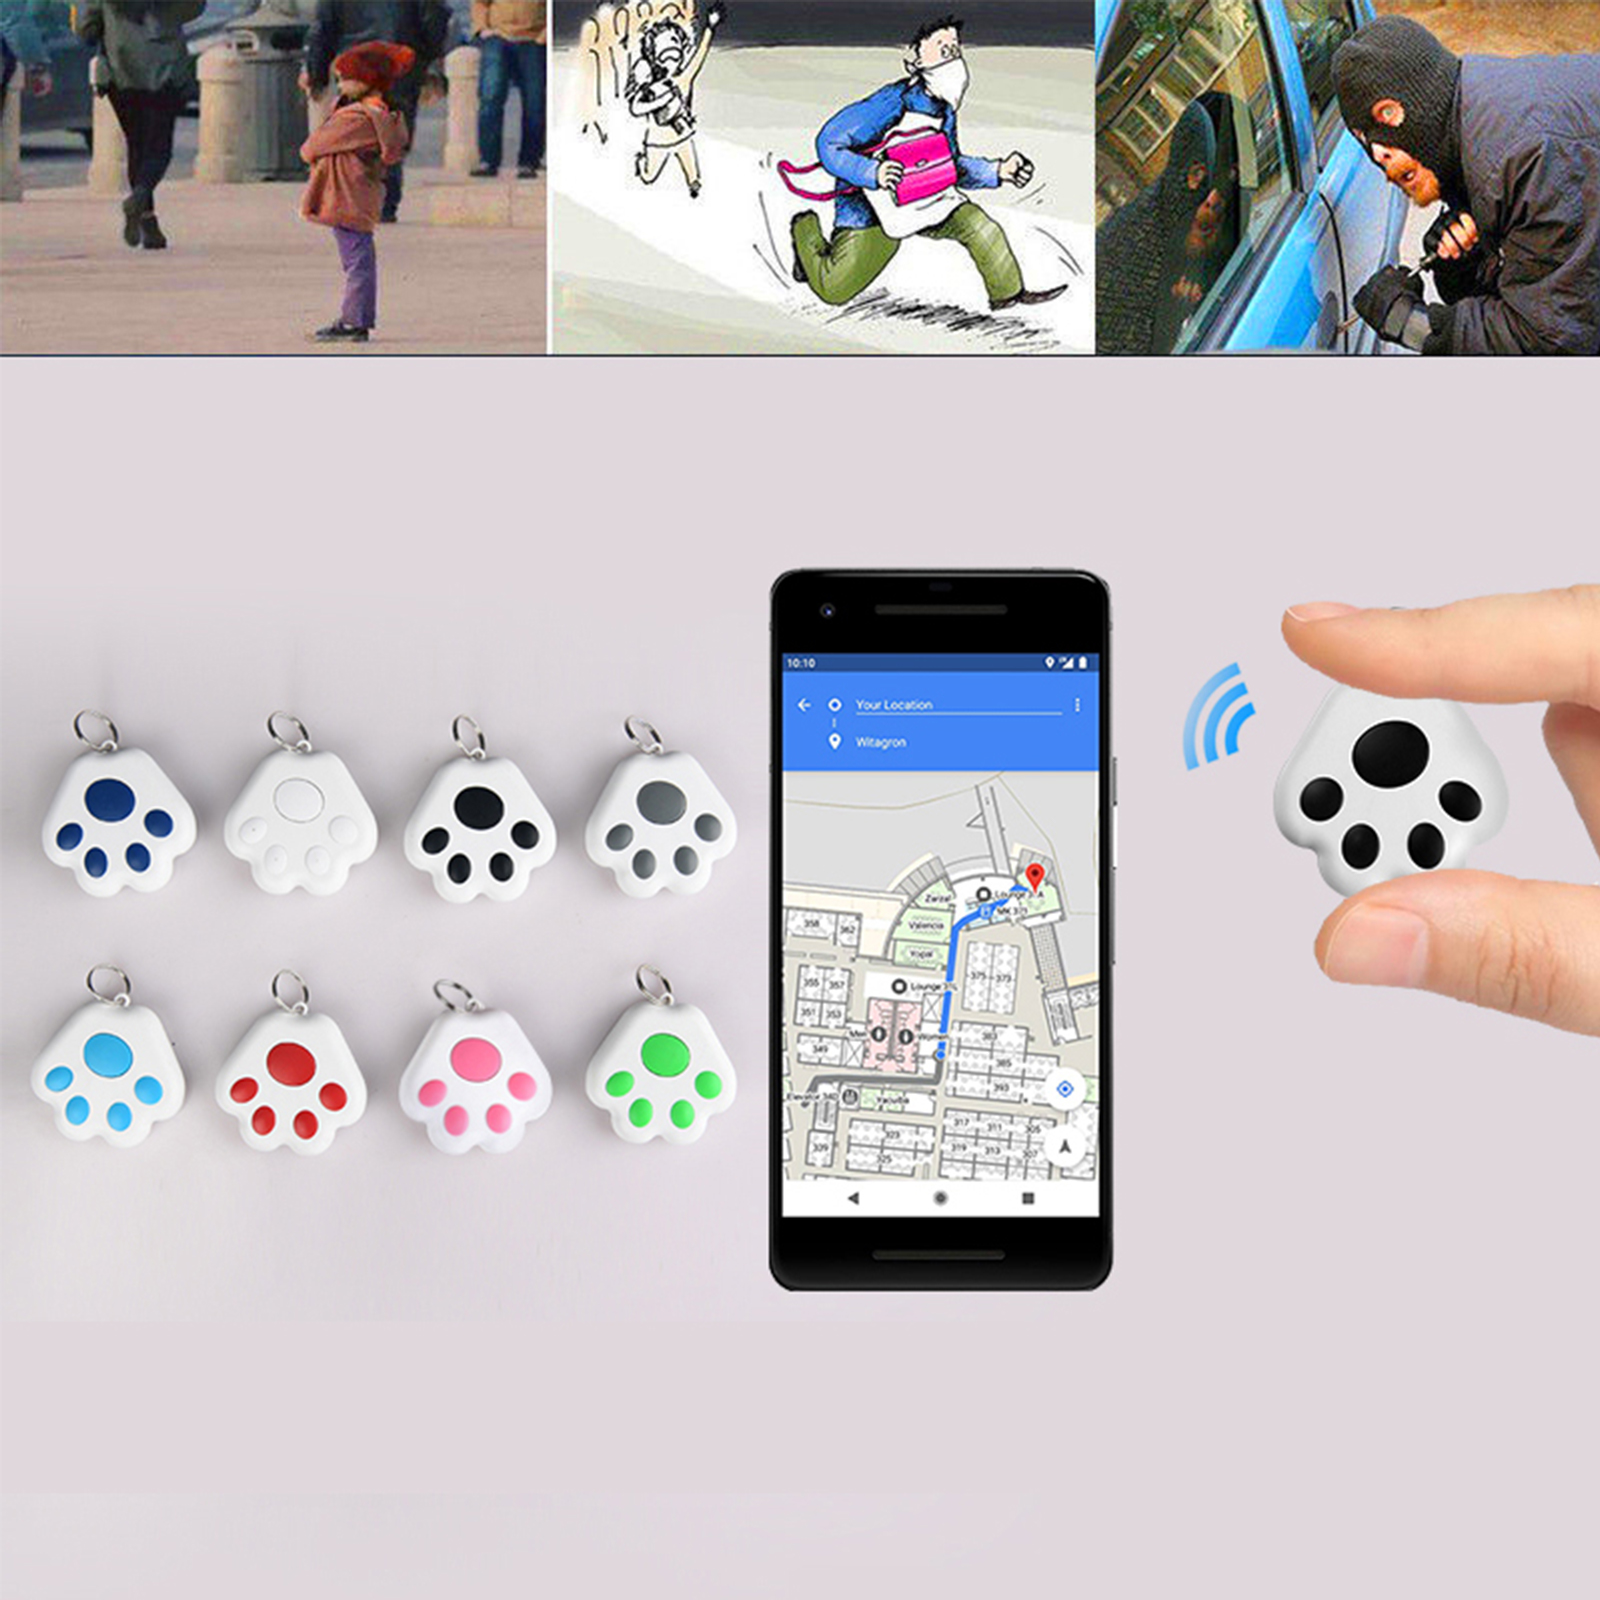 Bt Smart Tracker Voor Huisdieren Toetsen Zakken Portefeuilles Twee-weg Aangemeld Item Locator App Controle Selfie Shutter Voor Ios/Android Telefoons